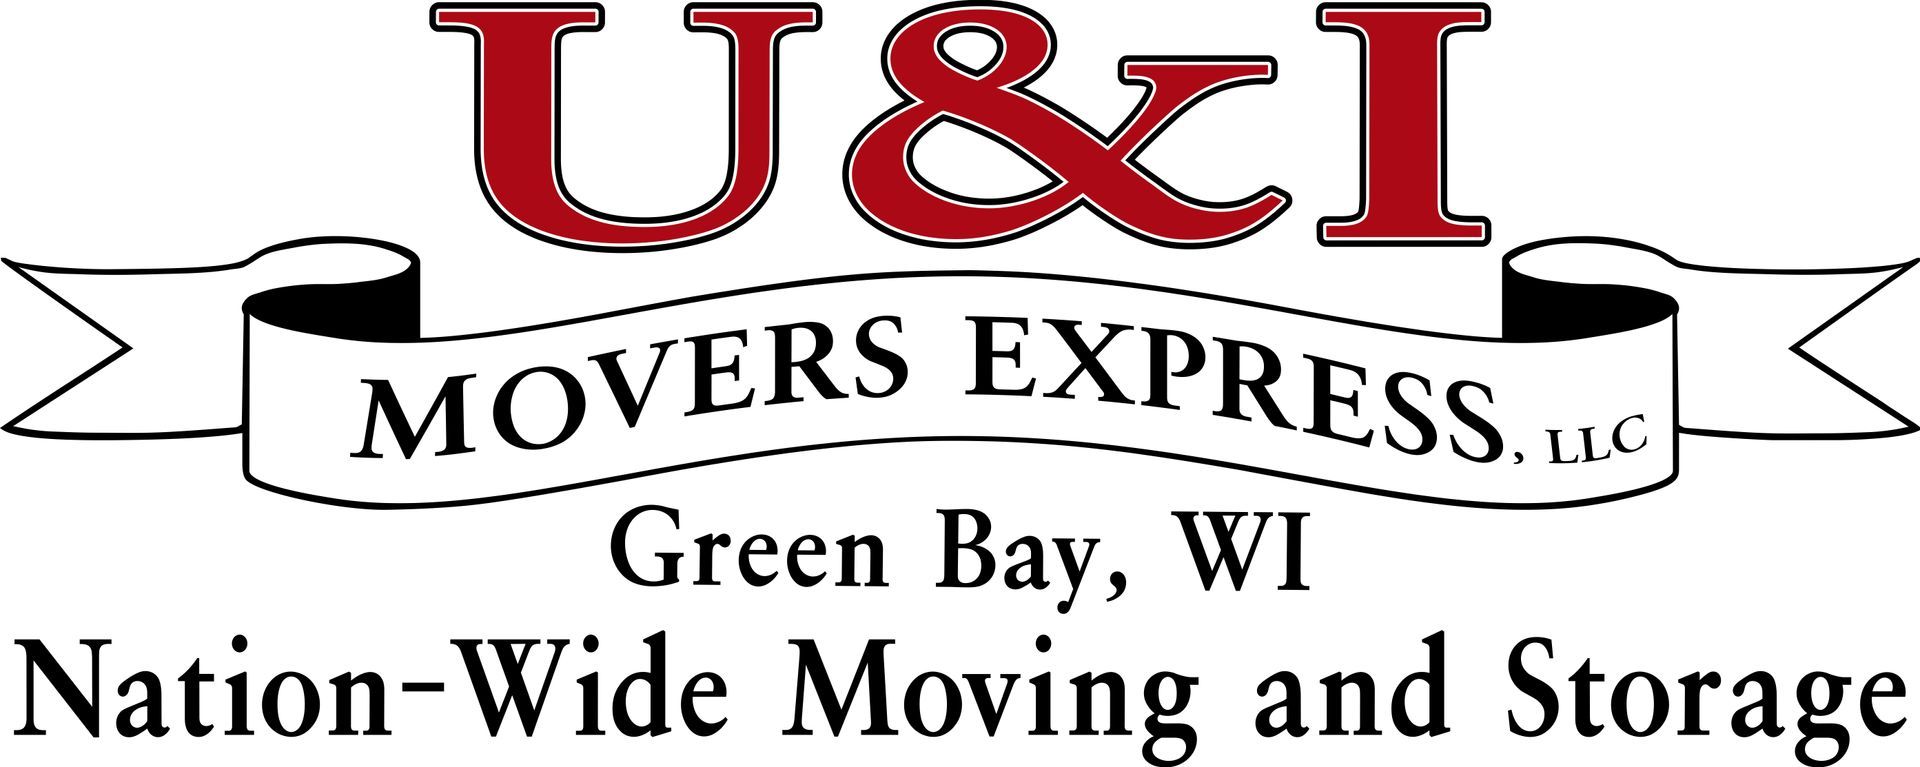 U & I Movers Express LLC